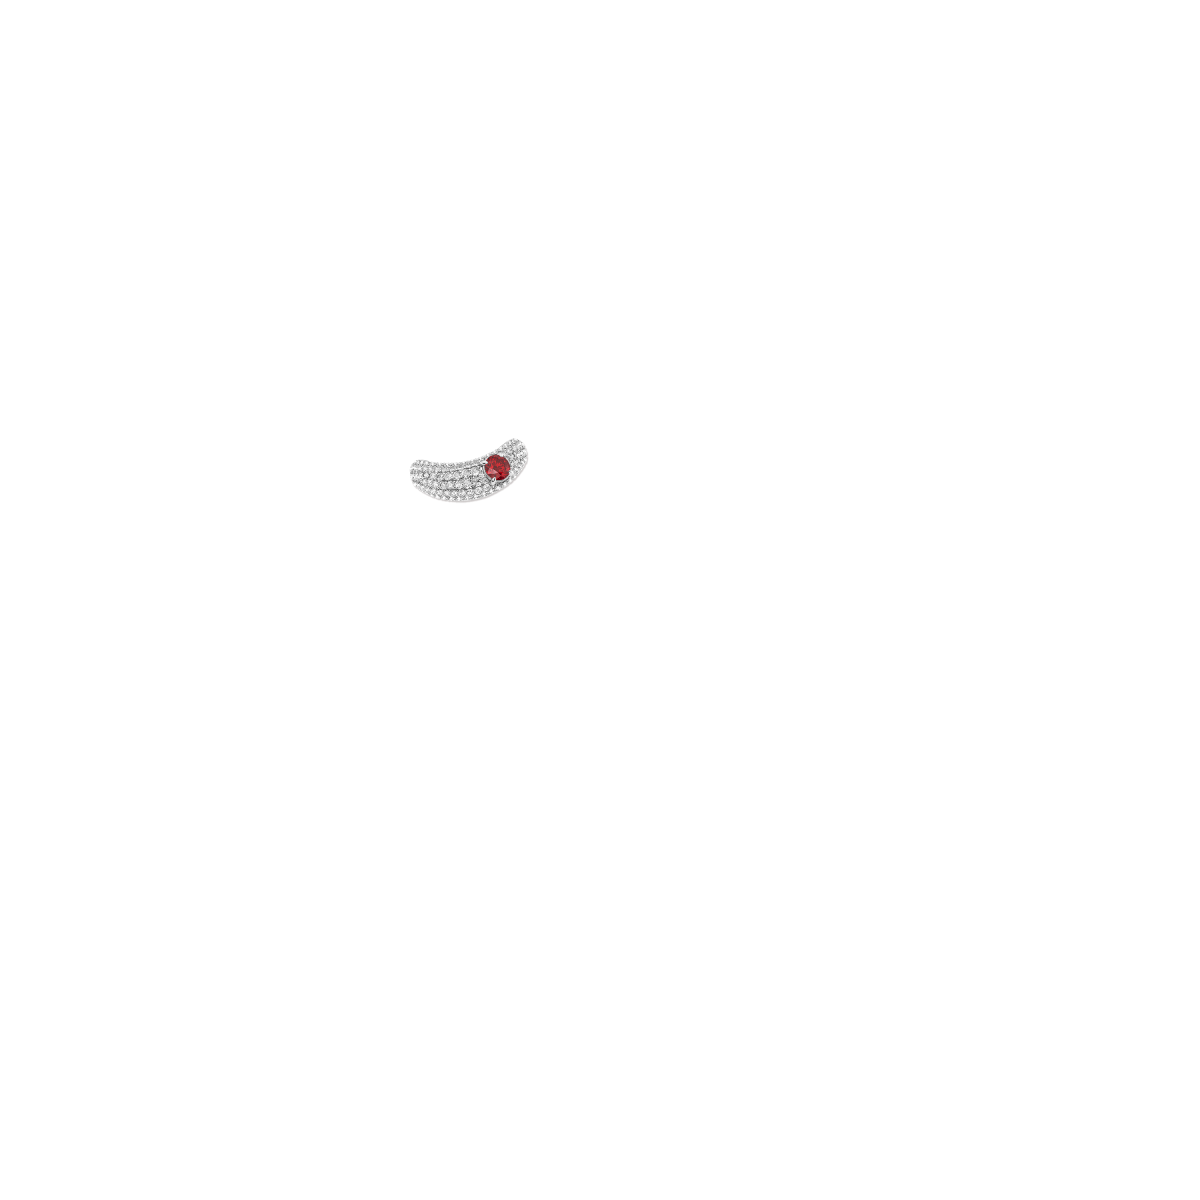 Handhautfarbtonbild für 5,2 mm runden Rubin und 1 ctw runden, im Labor gezüchteten Diamanten in halbmondförmiger Pavé-Fassung